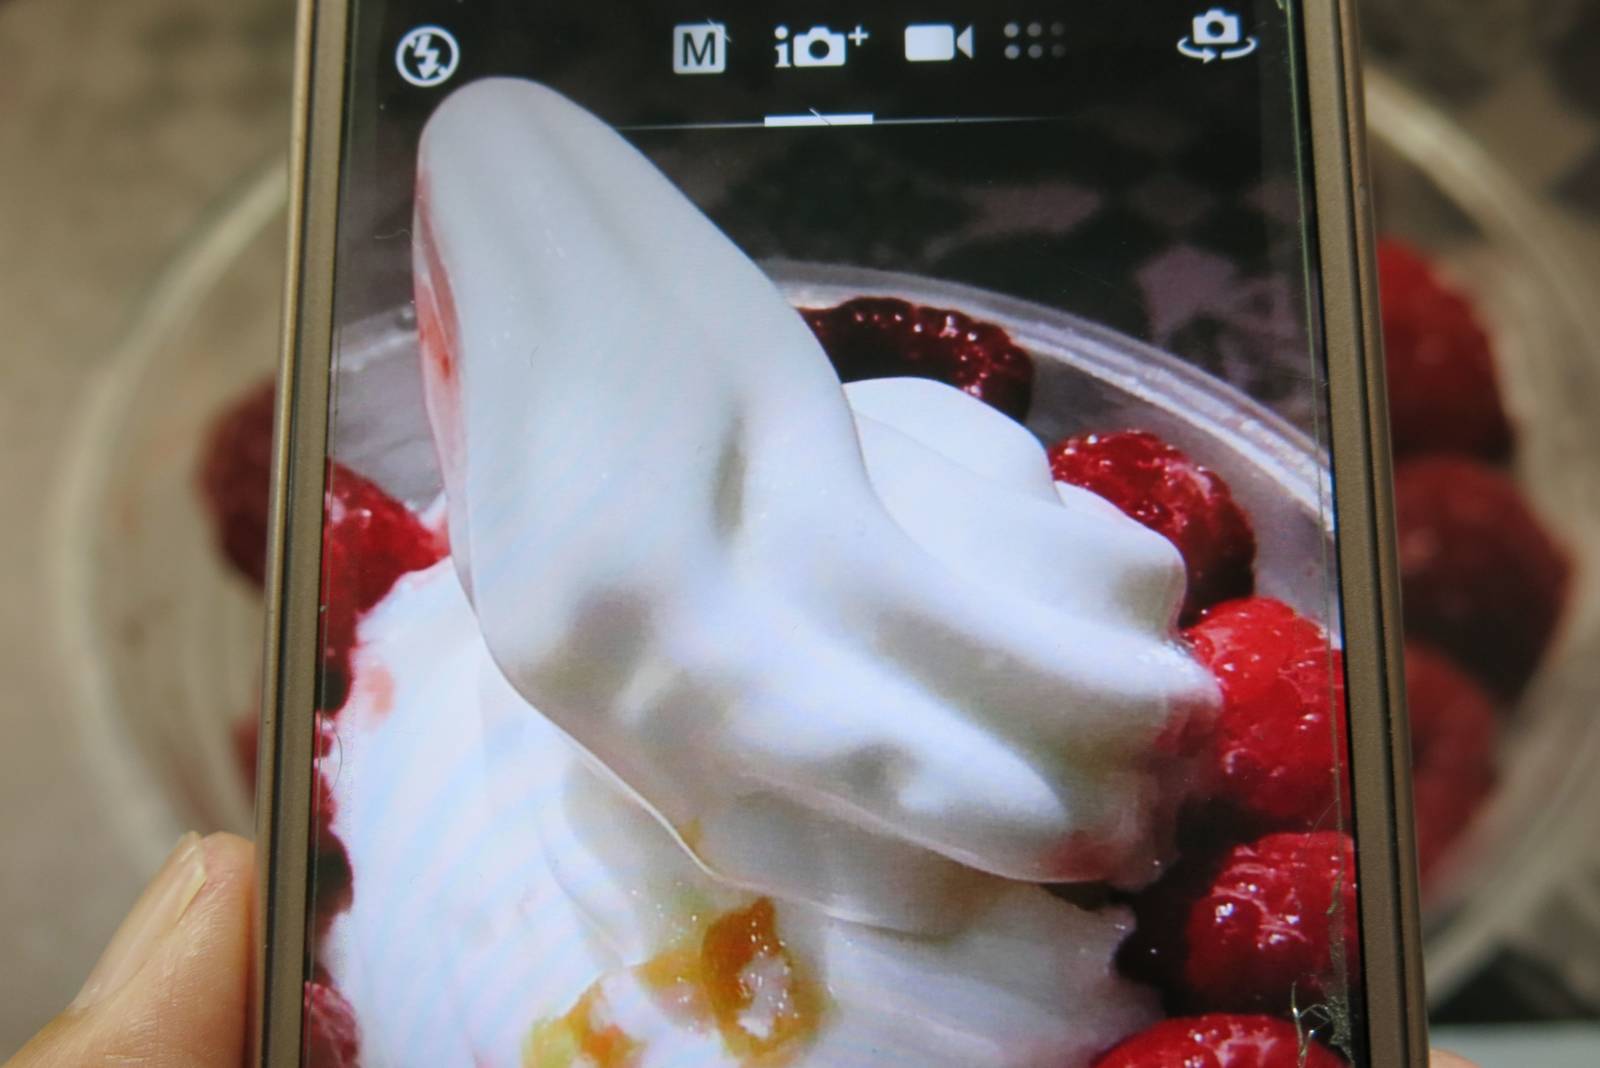 用手機鏡頭認識食物的IG世代